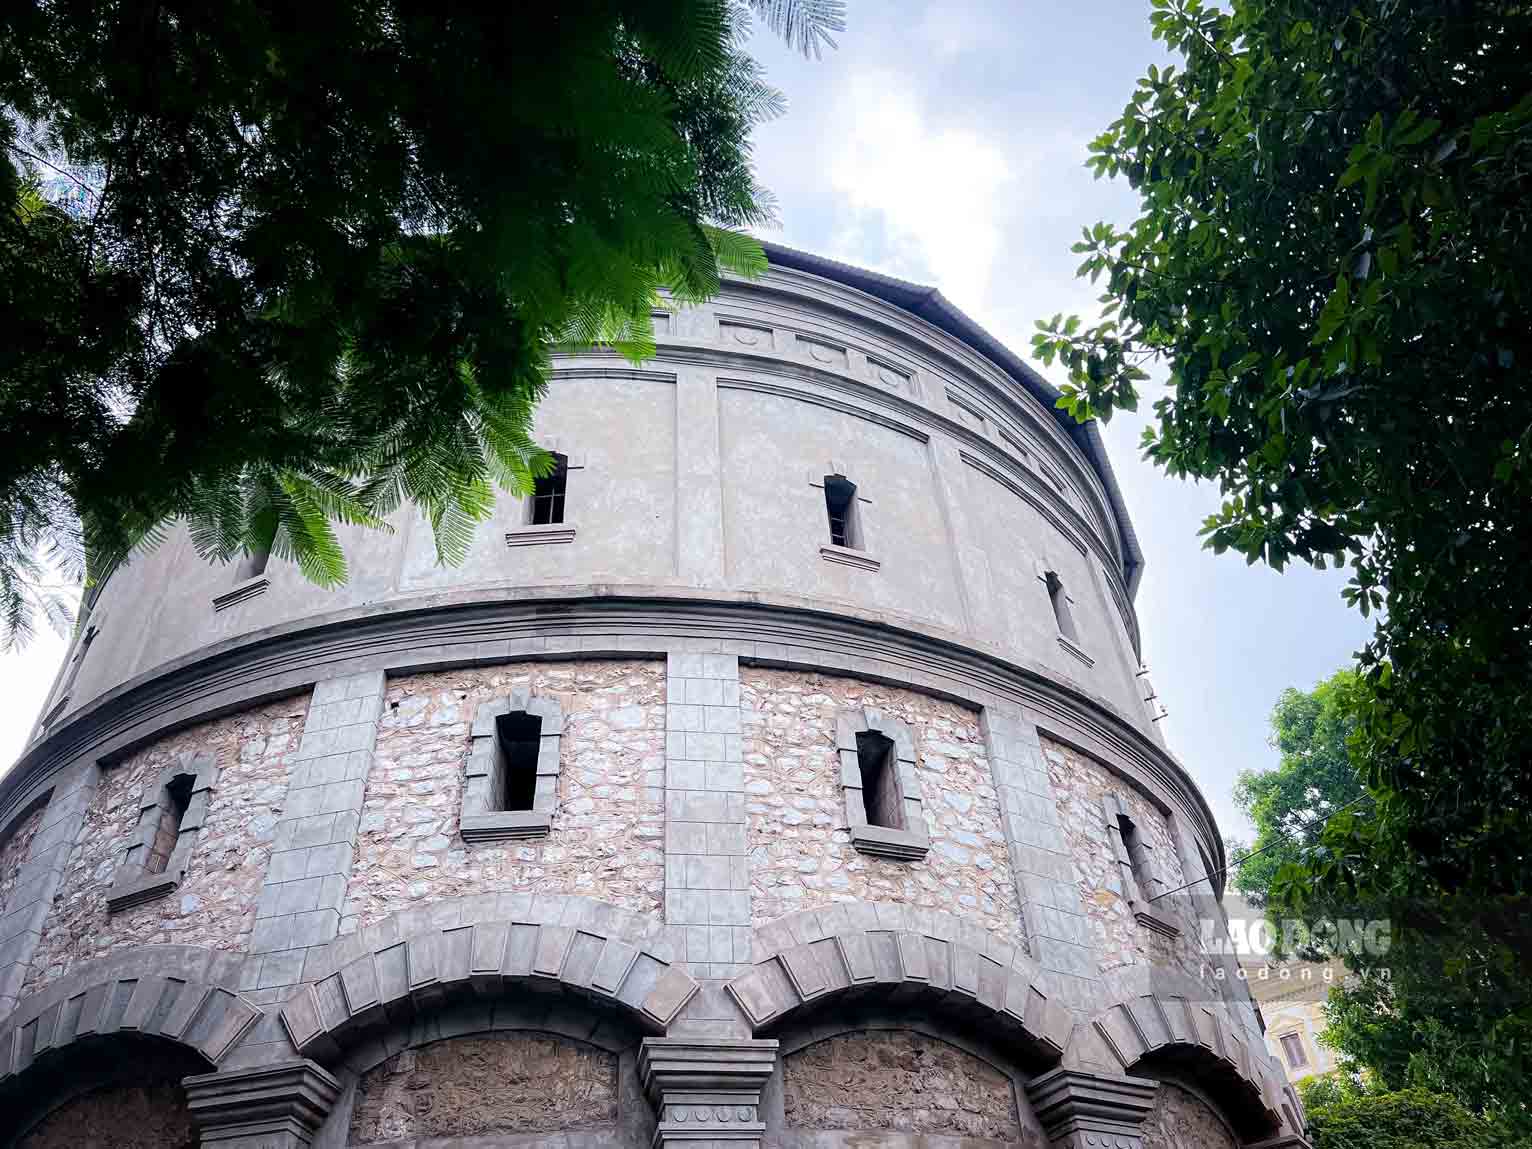 Tháp nước Hàng Đậu có hình trụ tròn, đường kính 19m, cao 3 tầng, mái có hình chóp nón, ở giữa là cột thu lôi. Tháp có đài nước khổng lồ bằng thép dung tích 1.250m3, nằm trên đỉnh 8 bức tường đá.